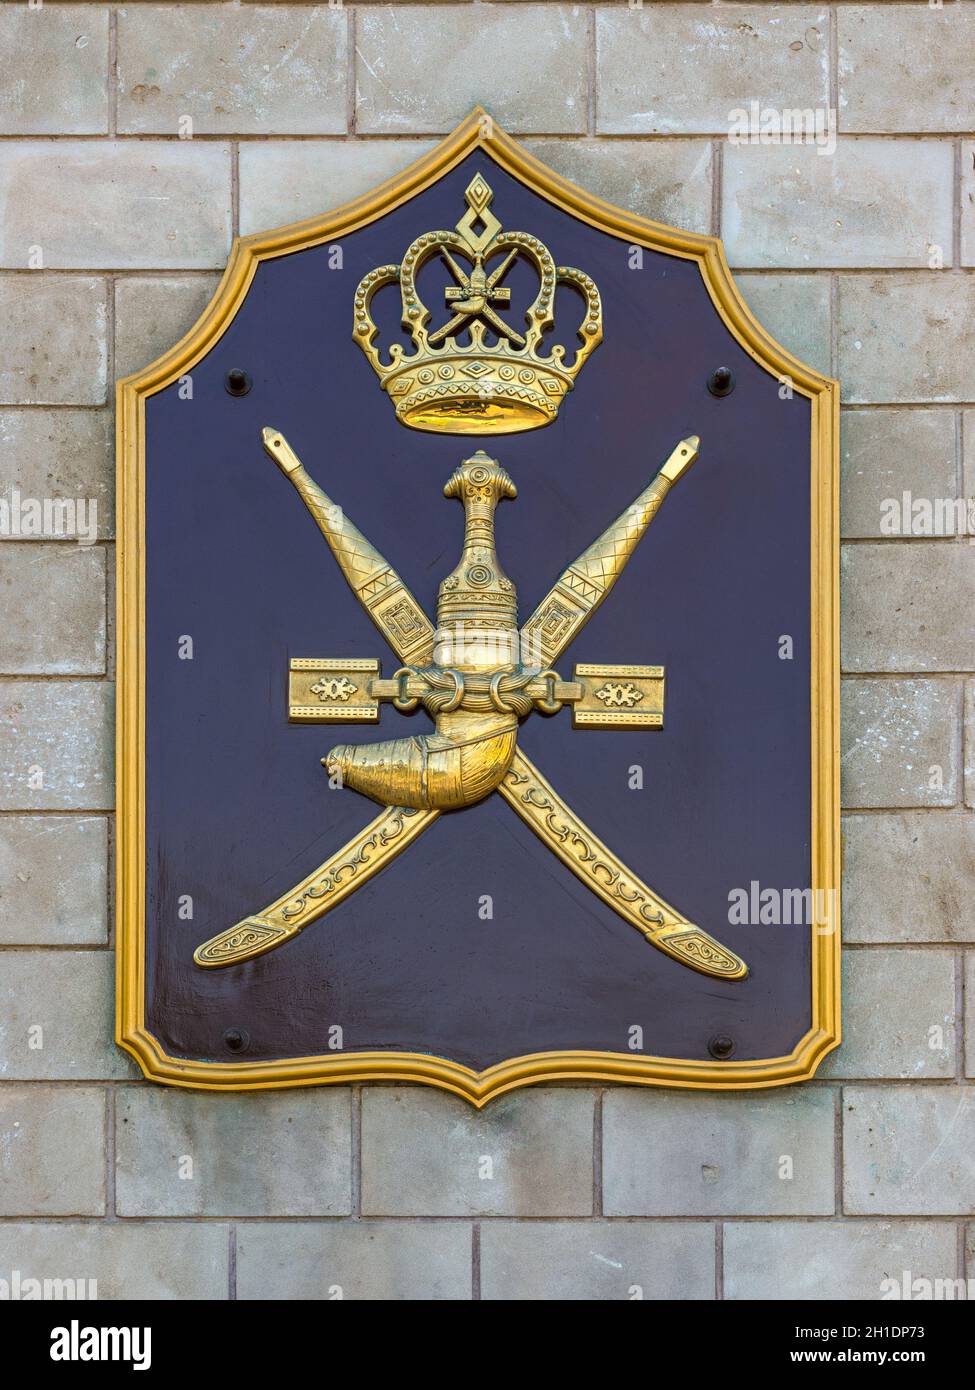 Maskat, Sultanat von Oman - November 12, 2017: das Hoheitszeichen des Sultanats Oman (Wappen) an der Wand der Sultan Qaboos bin Said Stockfoto